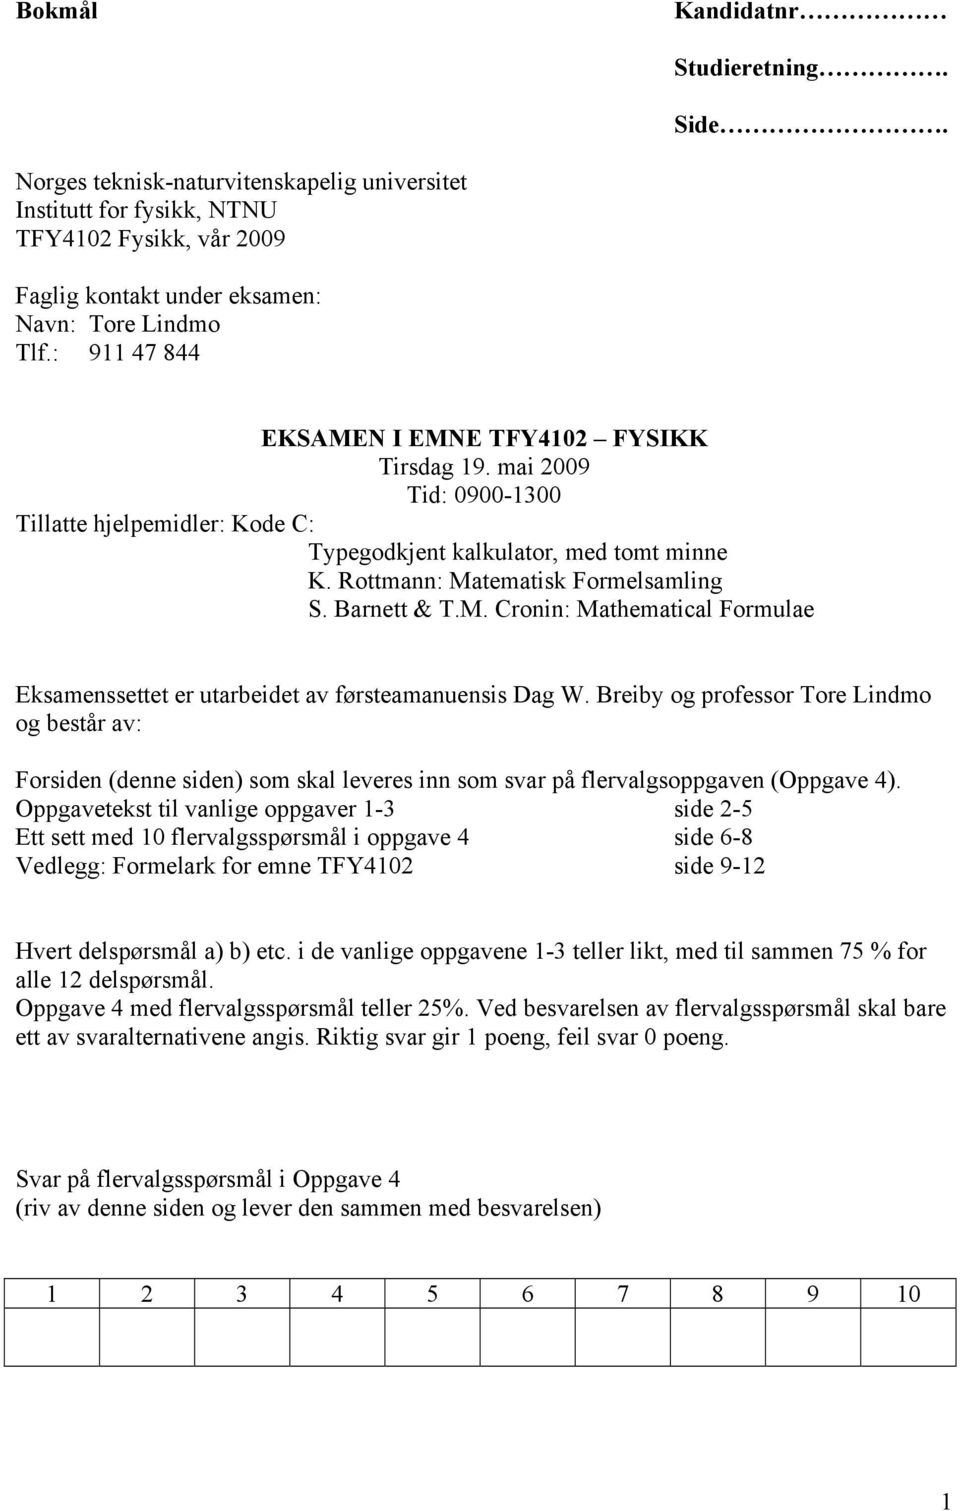 Breiby og professor Tore Lindmo og består av: Forsiden (denne siden) som skal leveres inn som svar på flervalgsoppgaven (Oppgave 4).